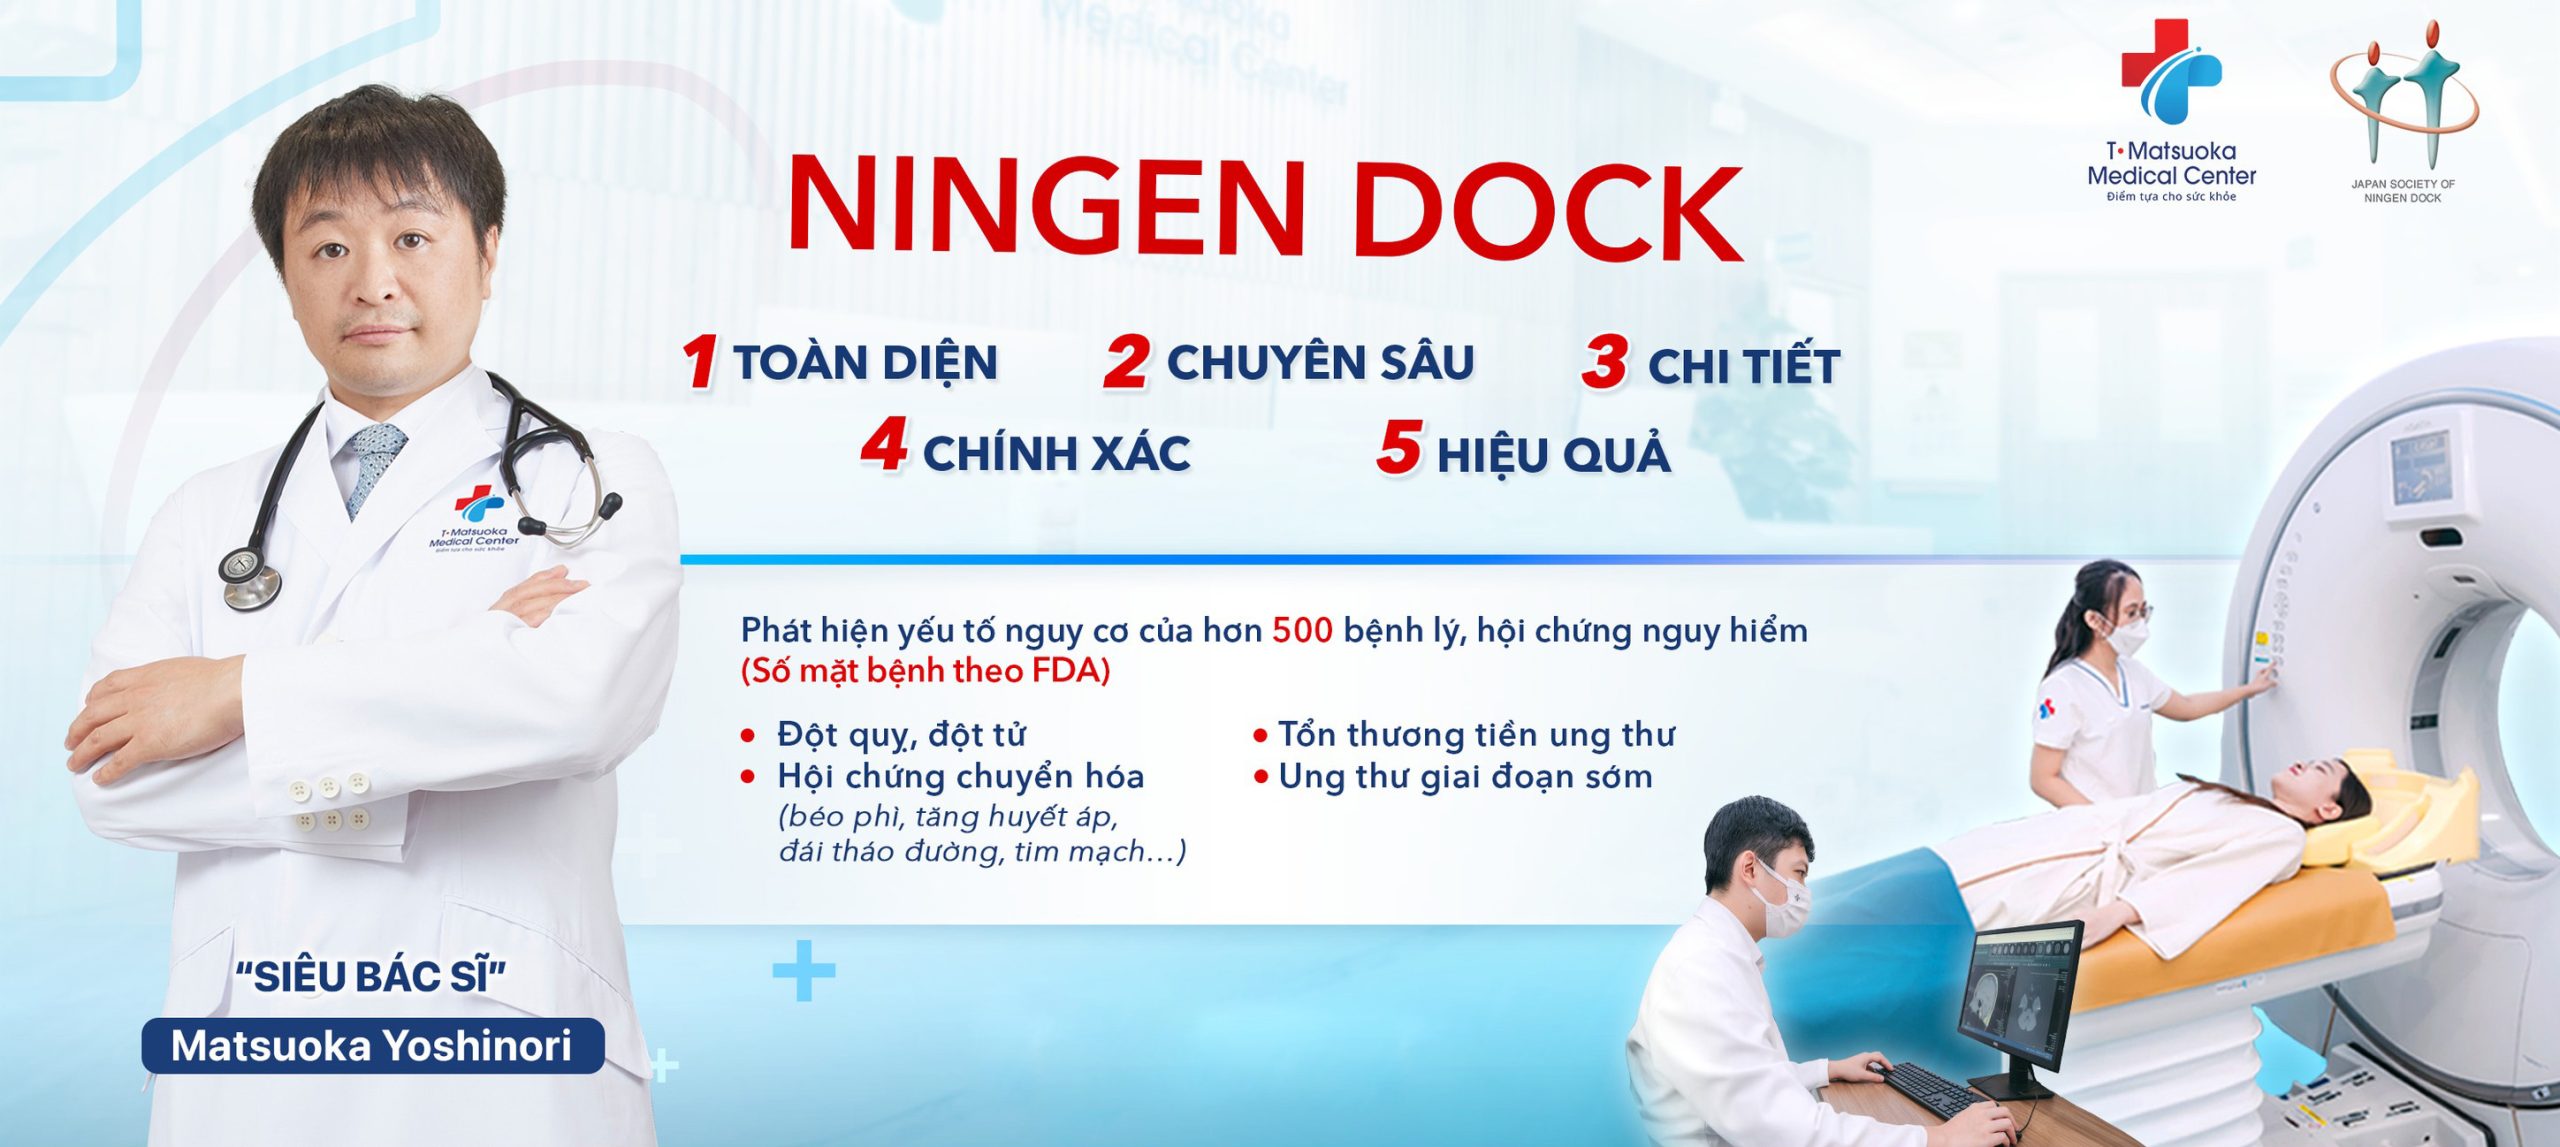 Kiểm tra sức khỏe theo mô hình Ningen Dock